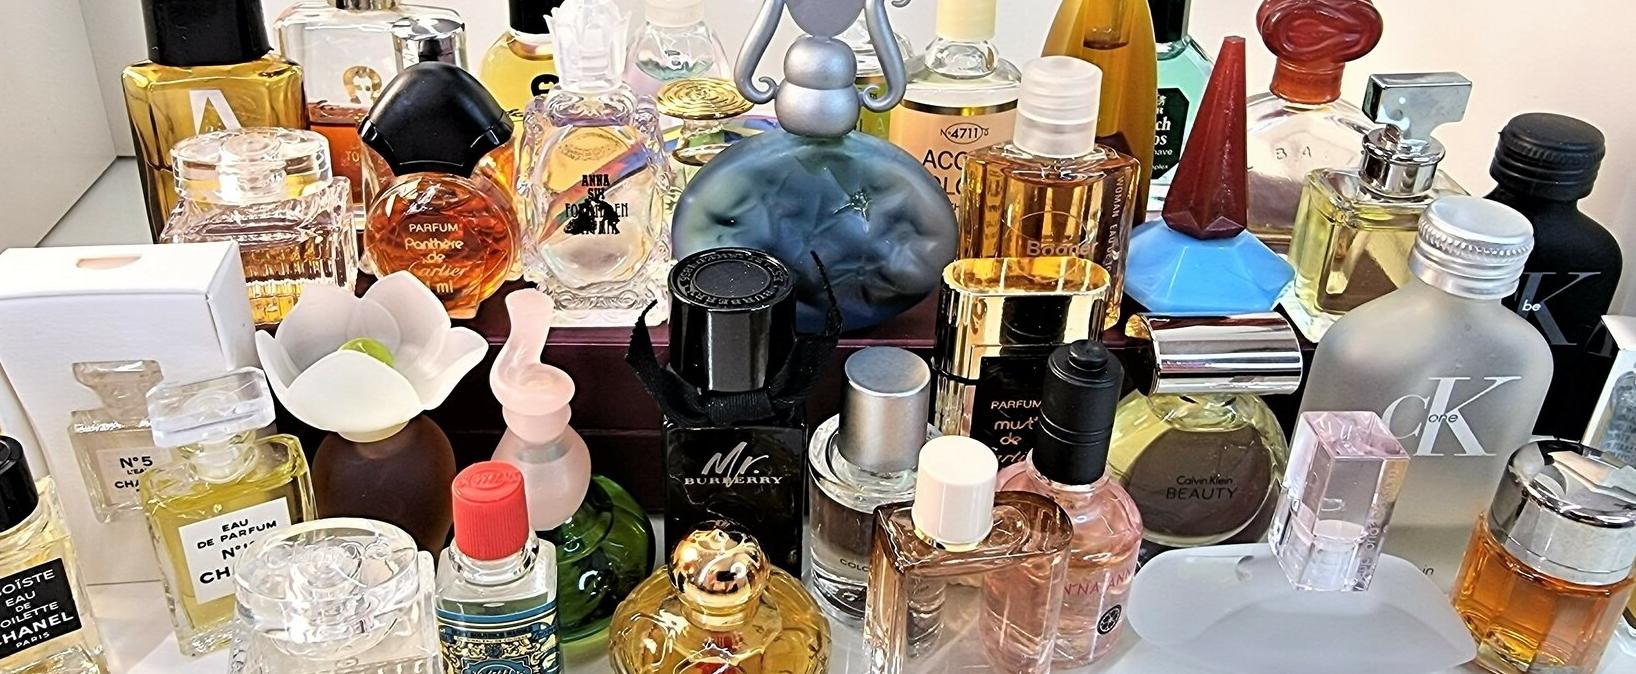 Meine Parfüm-Miniaturen Sammlung: von 4711 bis Chopard (Teil 1)